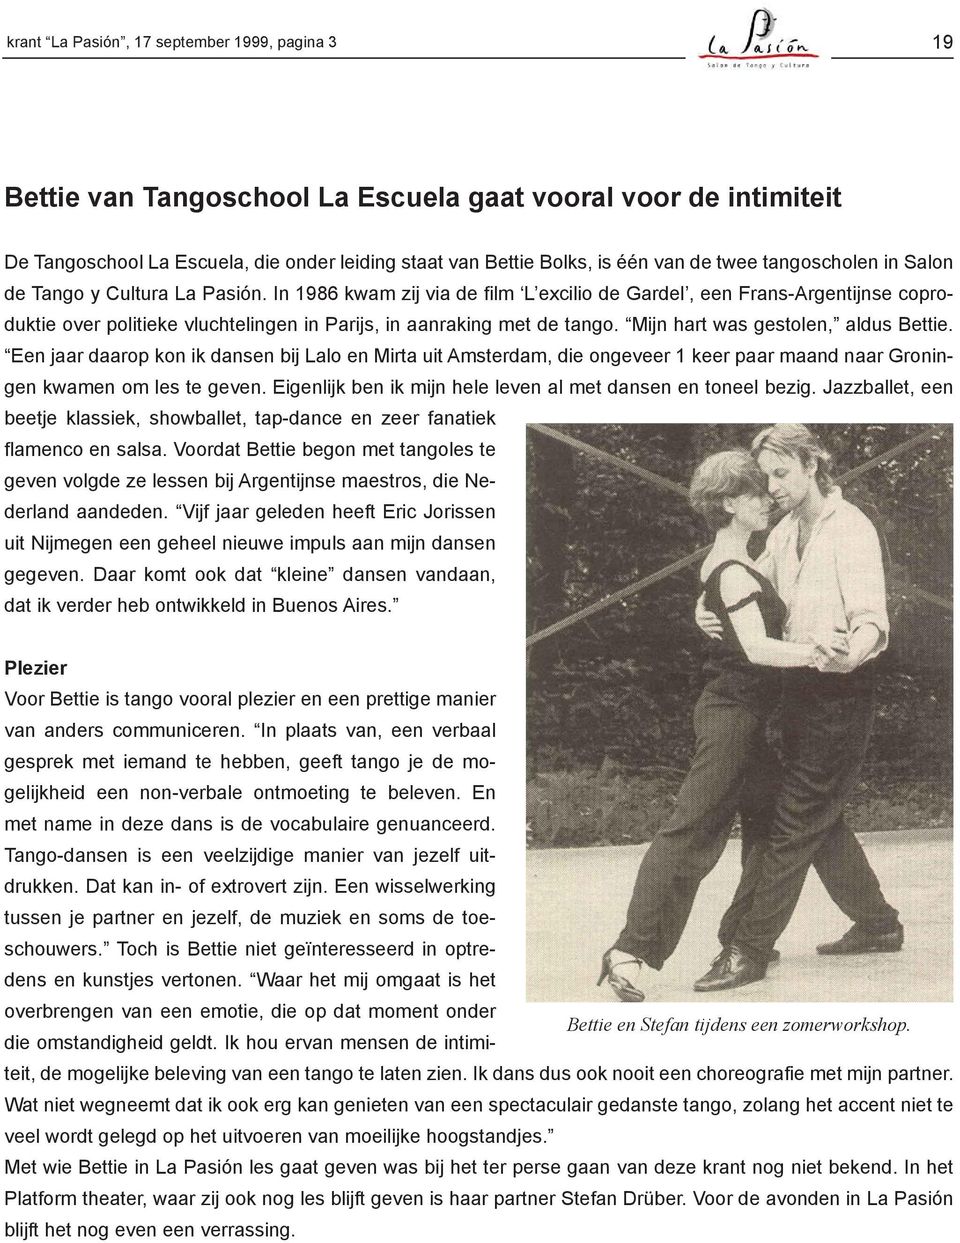 In 1986 kwam zij via de film L excilio de Gardel, een Frans-Argentijnse coproduktie over politieke vluchtelingen in Parijs, in aanraking met de tango. Mijn hart was gestolen, aldus Bettie.